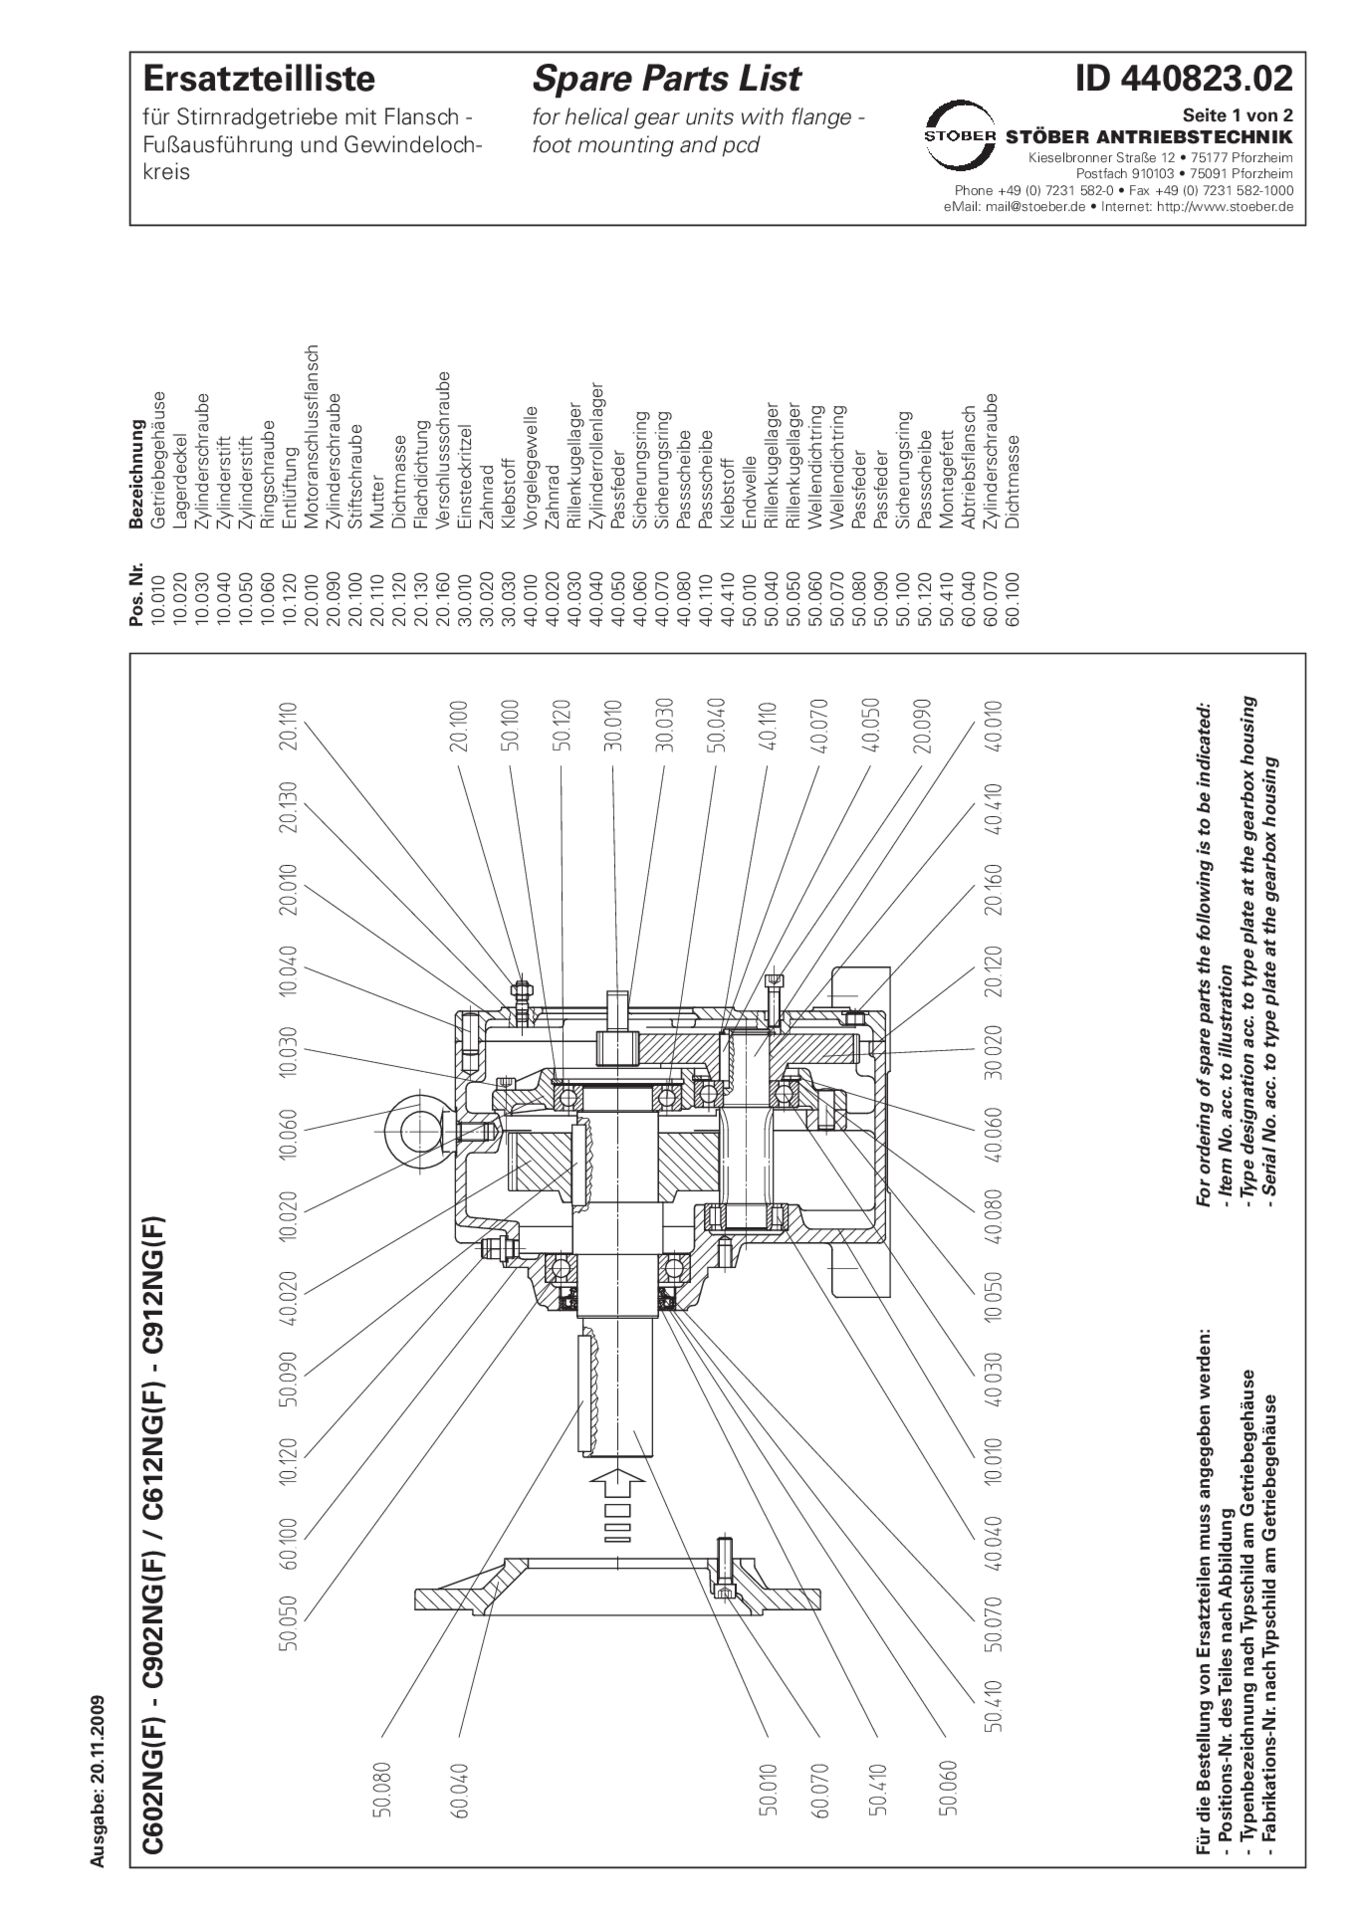 Replacement parts list helical gear units C602 C612 C702 C712 C802 C812 C902 C912 NG NFErsatzteilliste Stirnradgetriebe C602 C612 C702 C712 C802 C812 C902 C912 NG NF